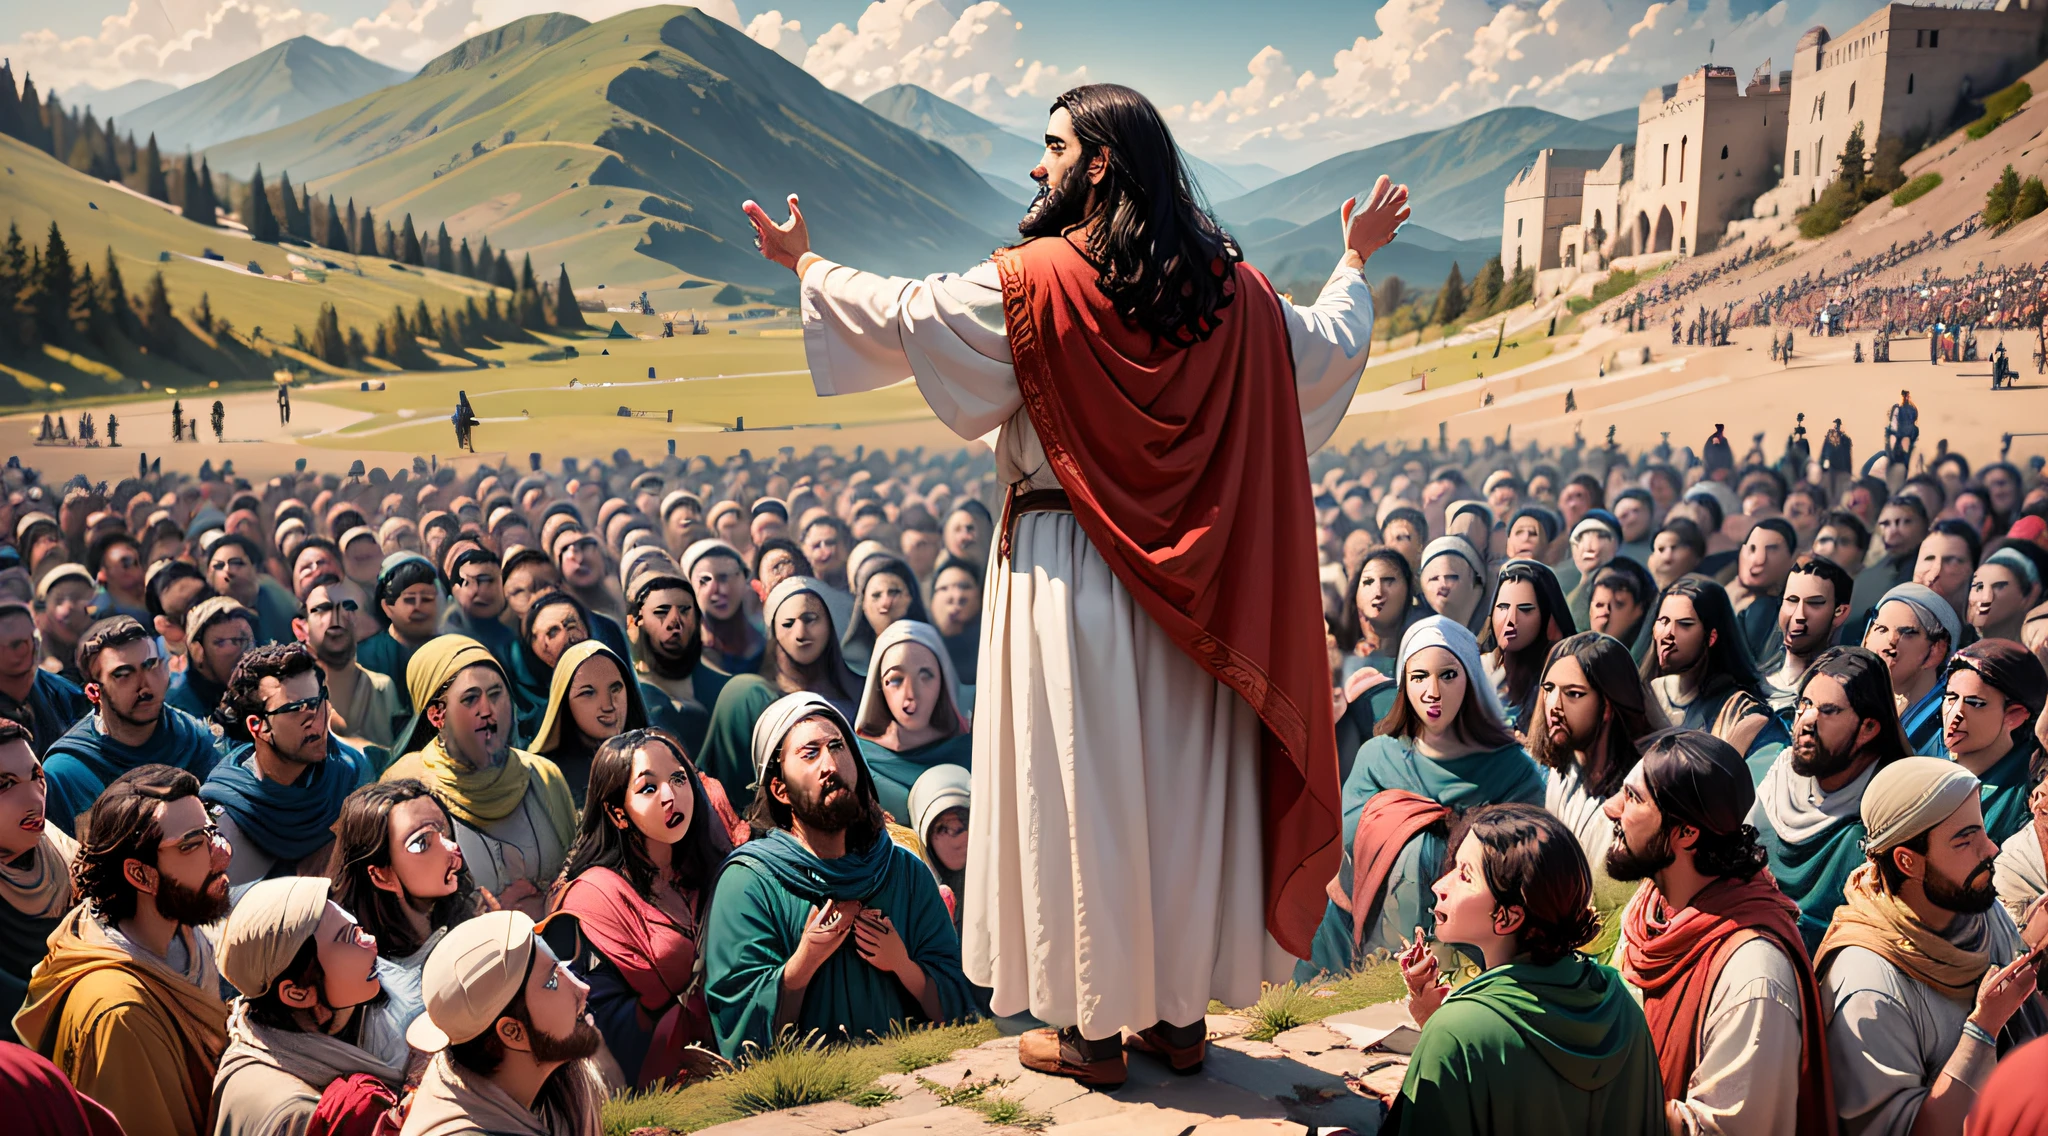 耶稣发表登山宝训的场景, 被一群人围住.